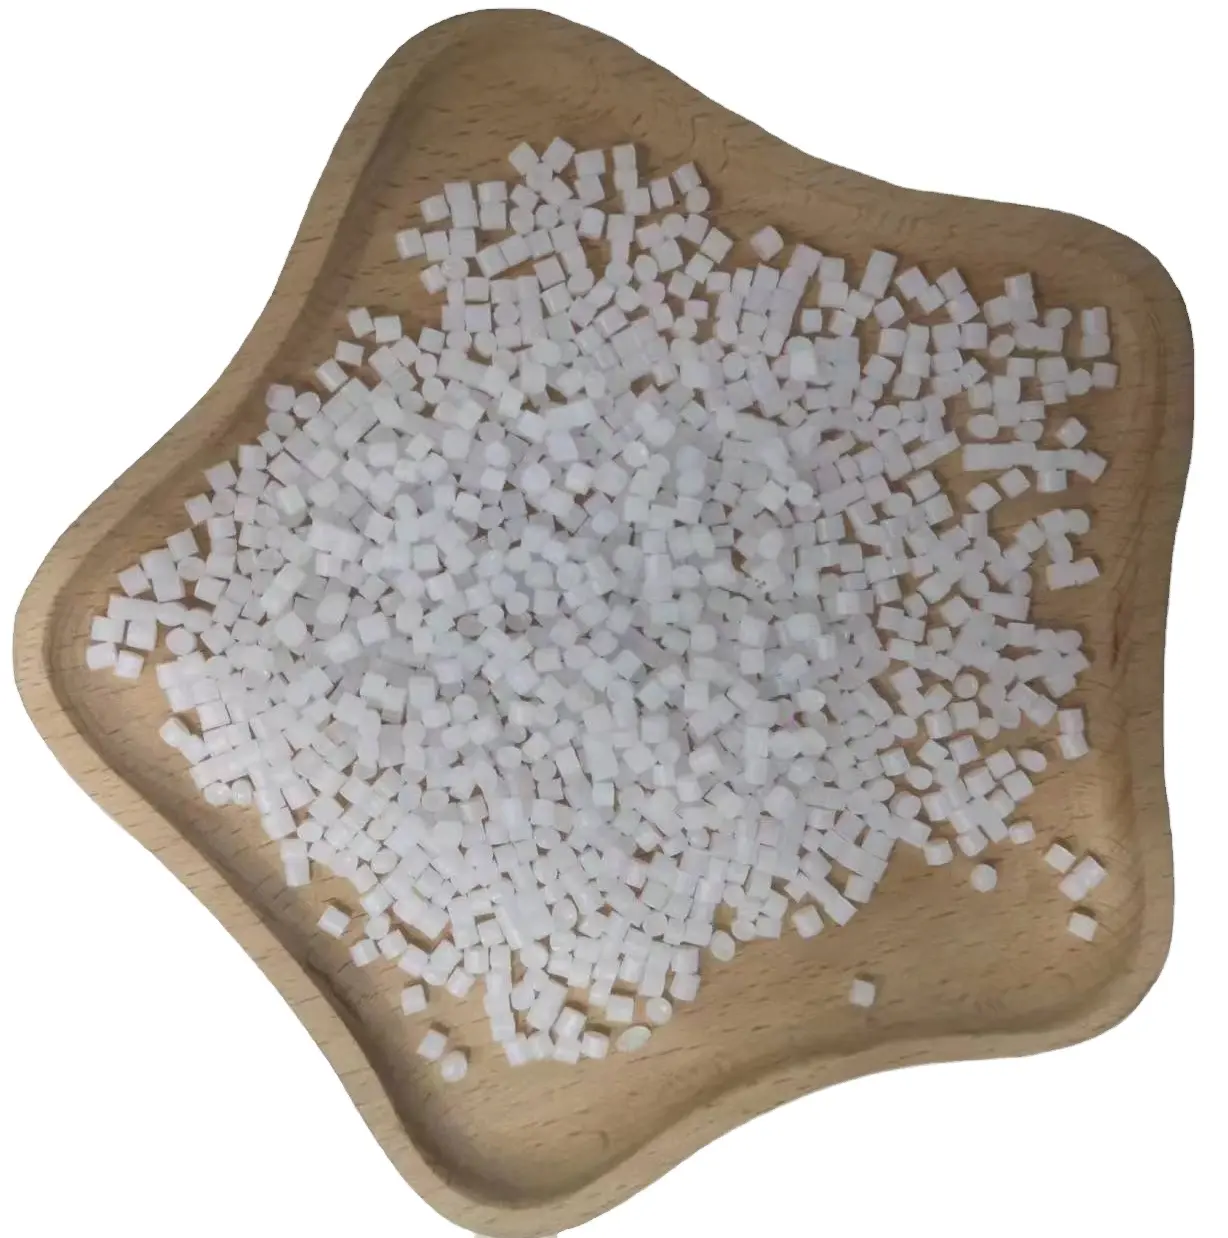 Le polystyrène à fort impact granule les matières premières en plastique vierges des granules HIPS532